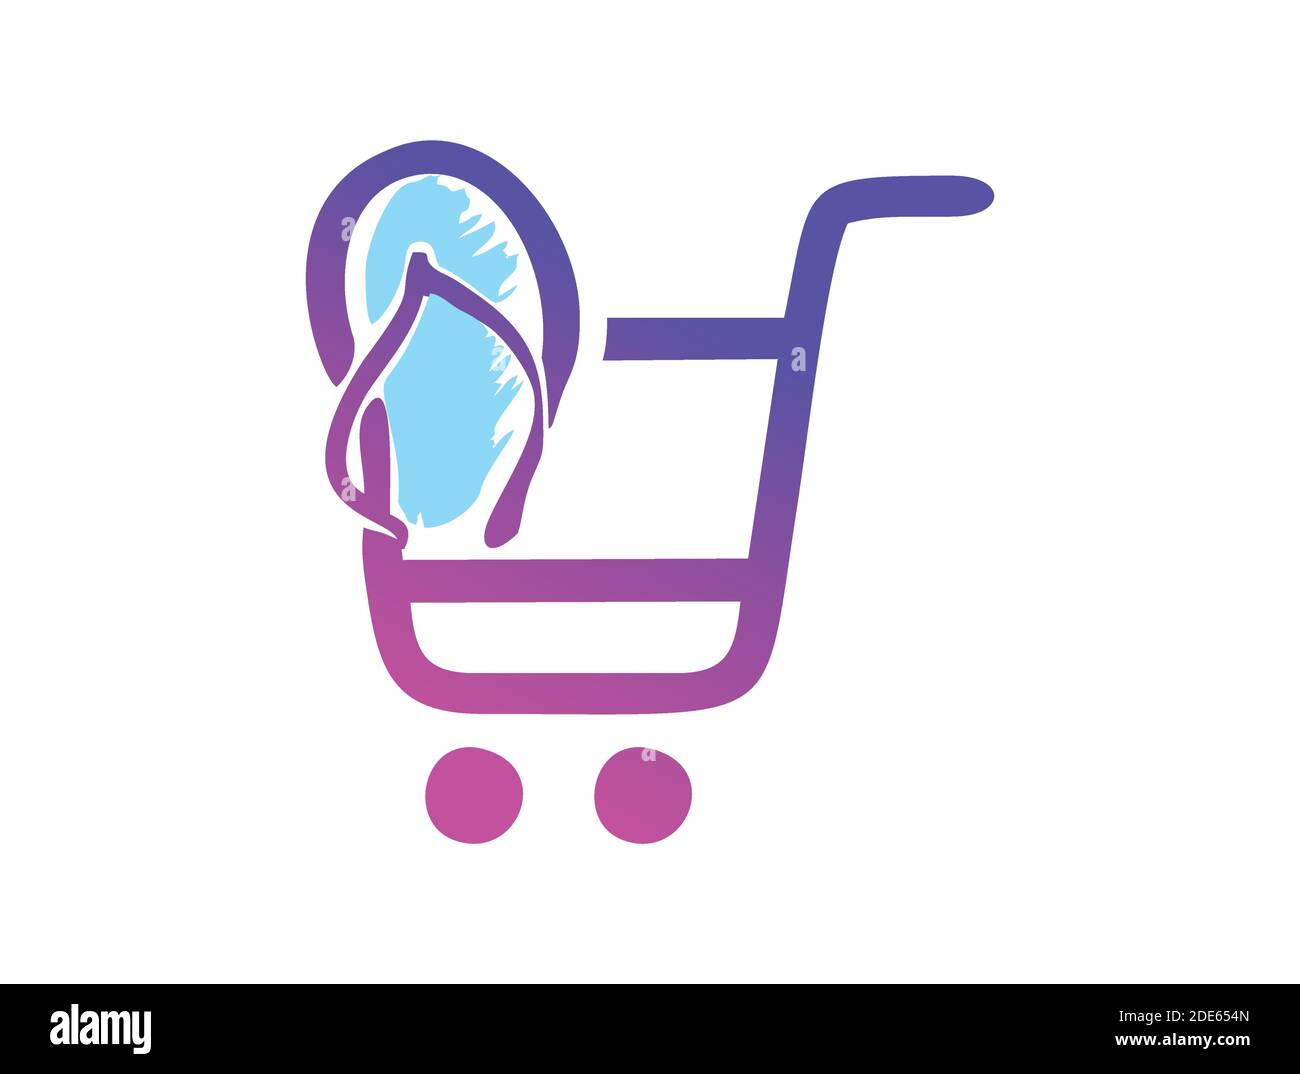 A Vector Illustration of Flip Flop Sandal Shop Sign Stock Vector